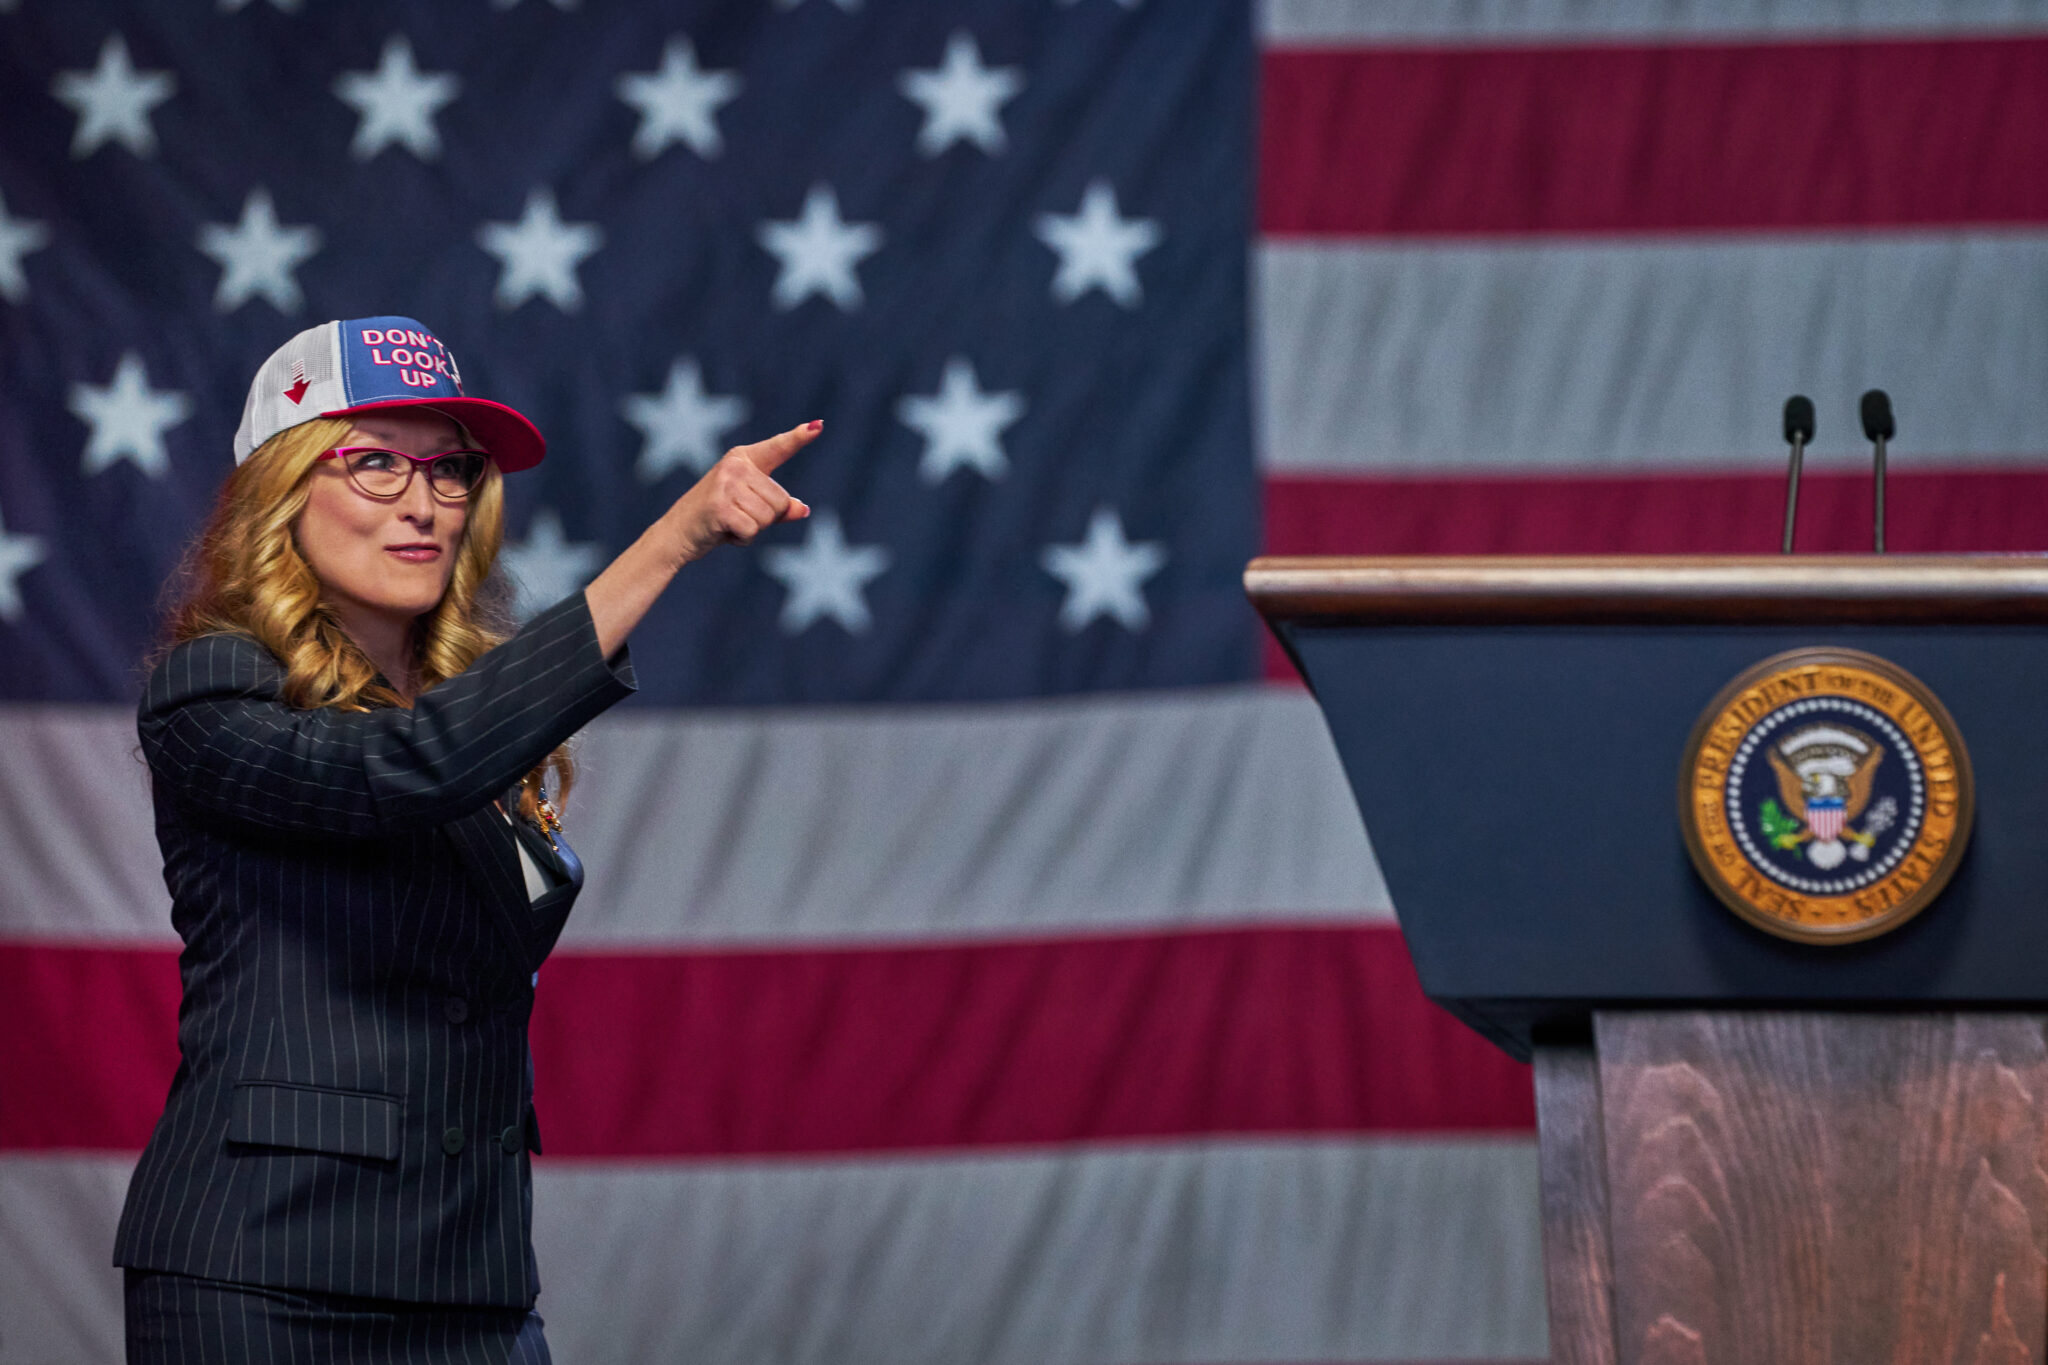 Eine Frau mit einer PR-Cap, neben ihr ein Rednerpult, im Hintergrund die US-Flagge